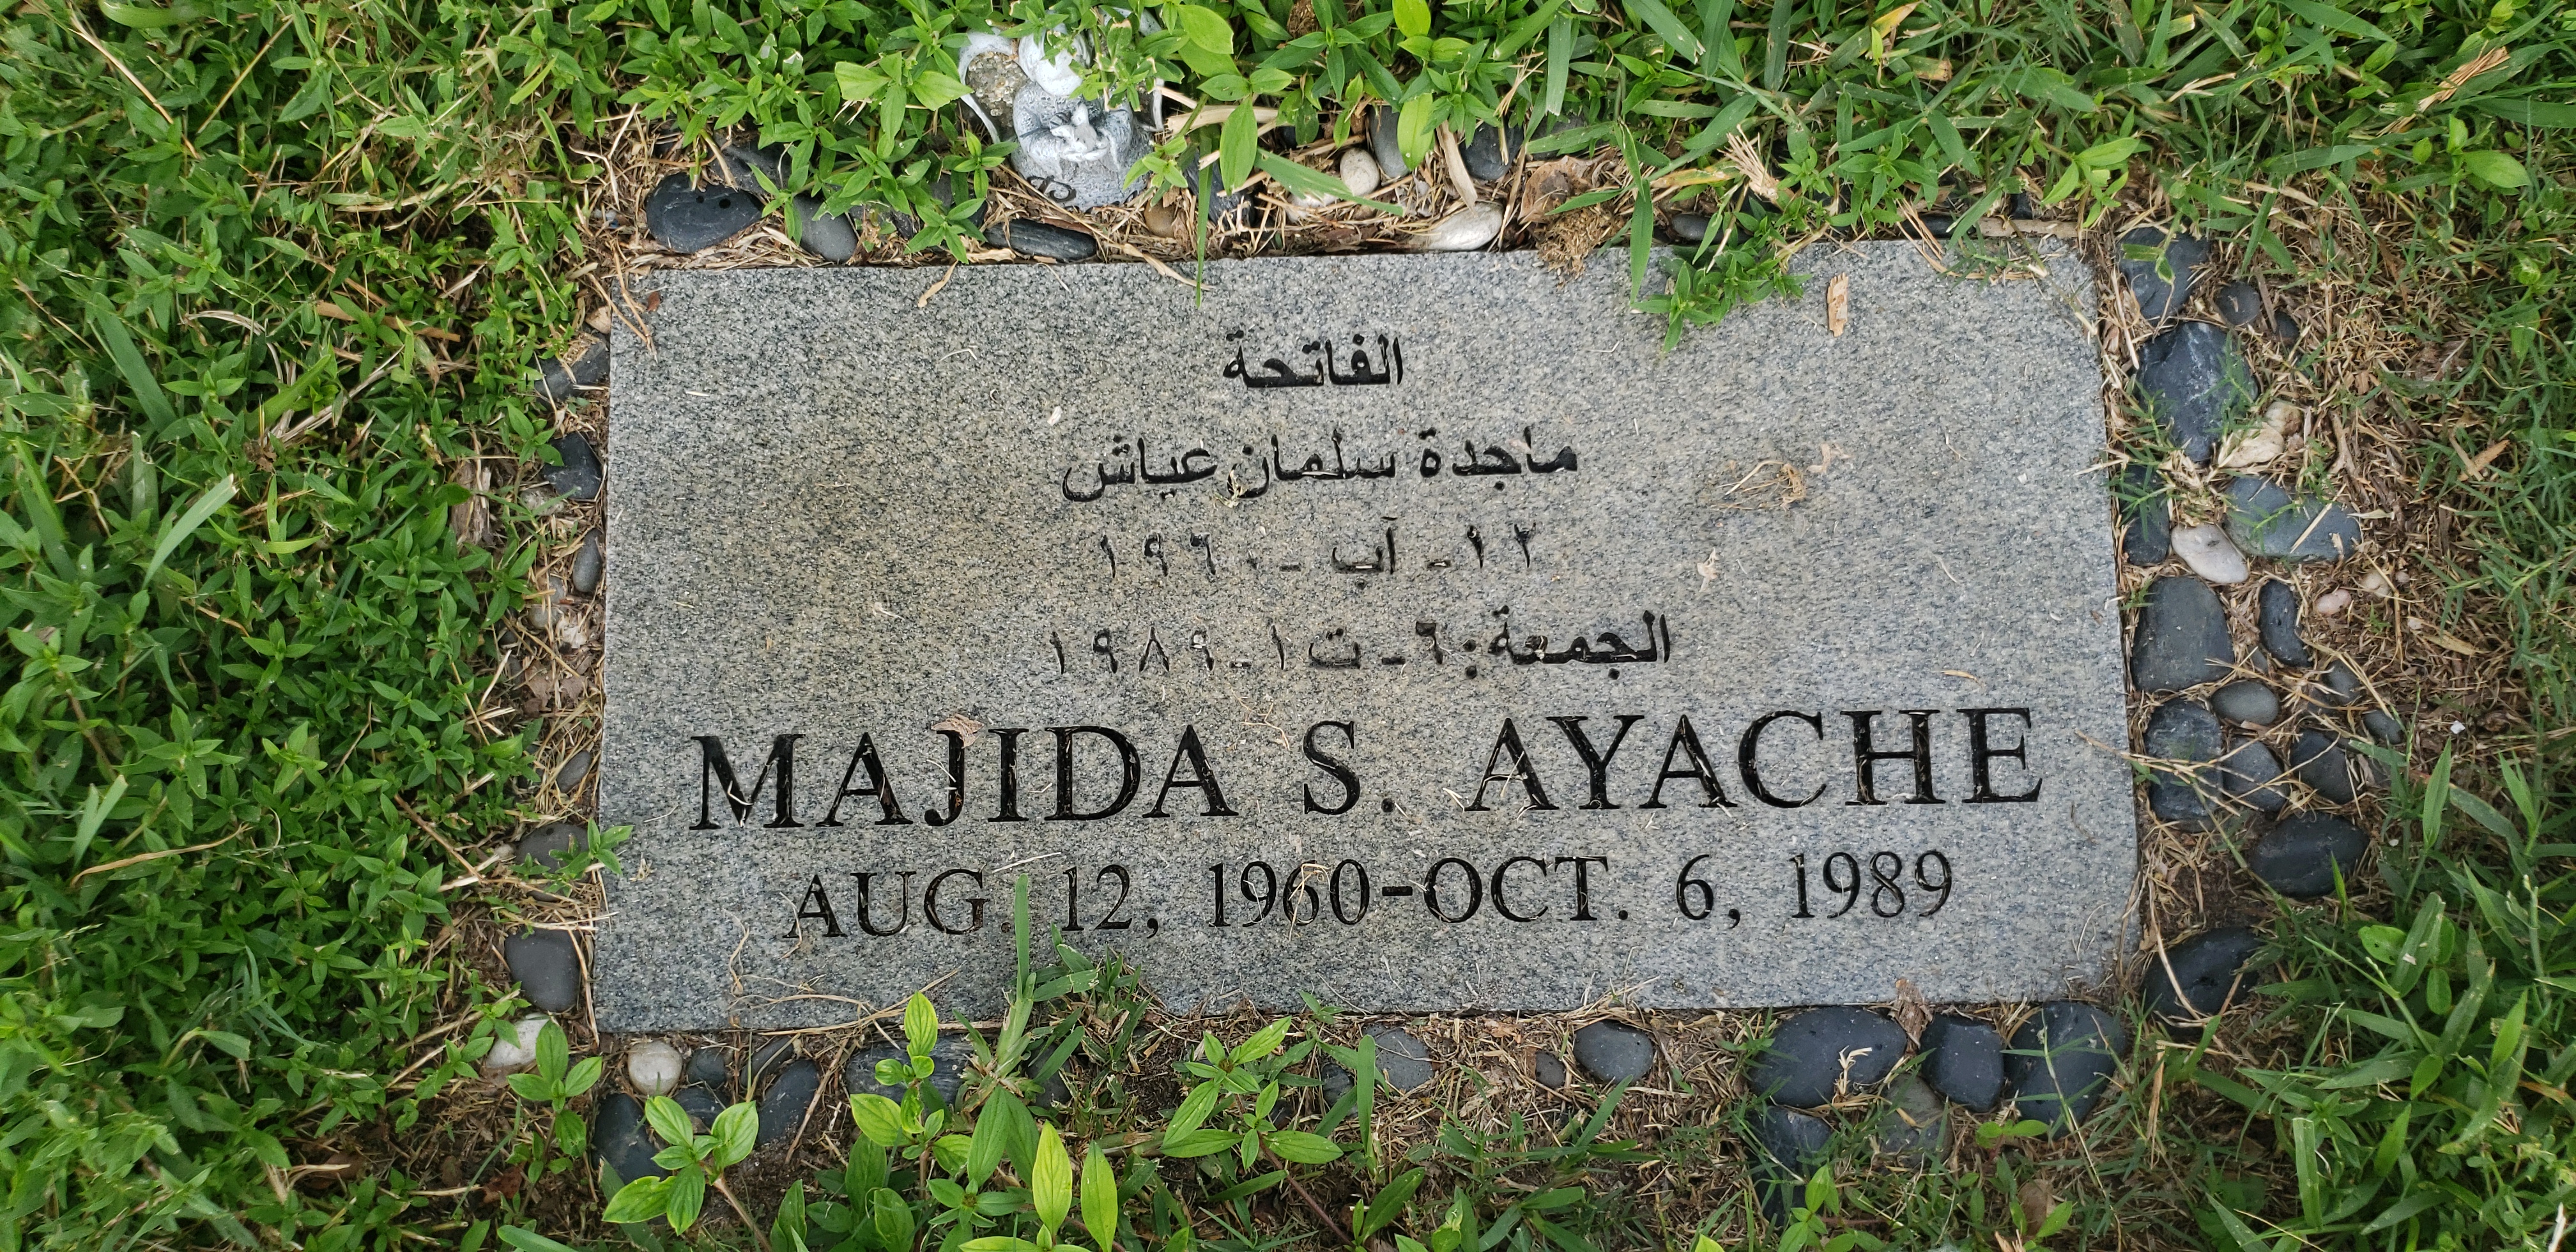 Majida S Ayache